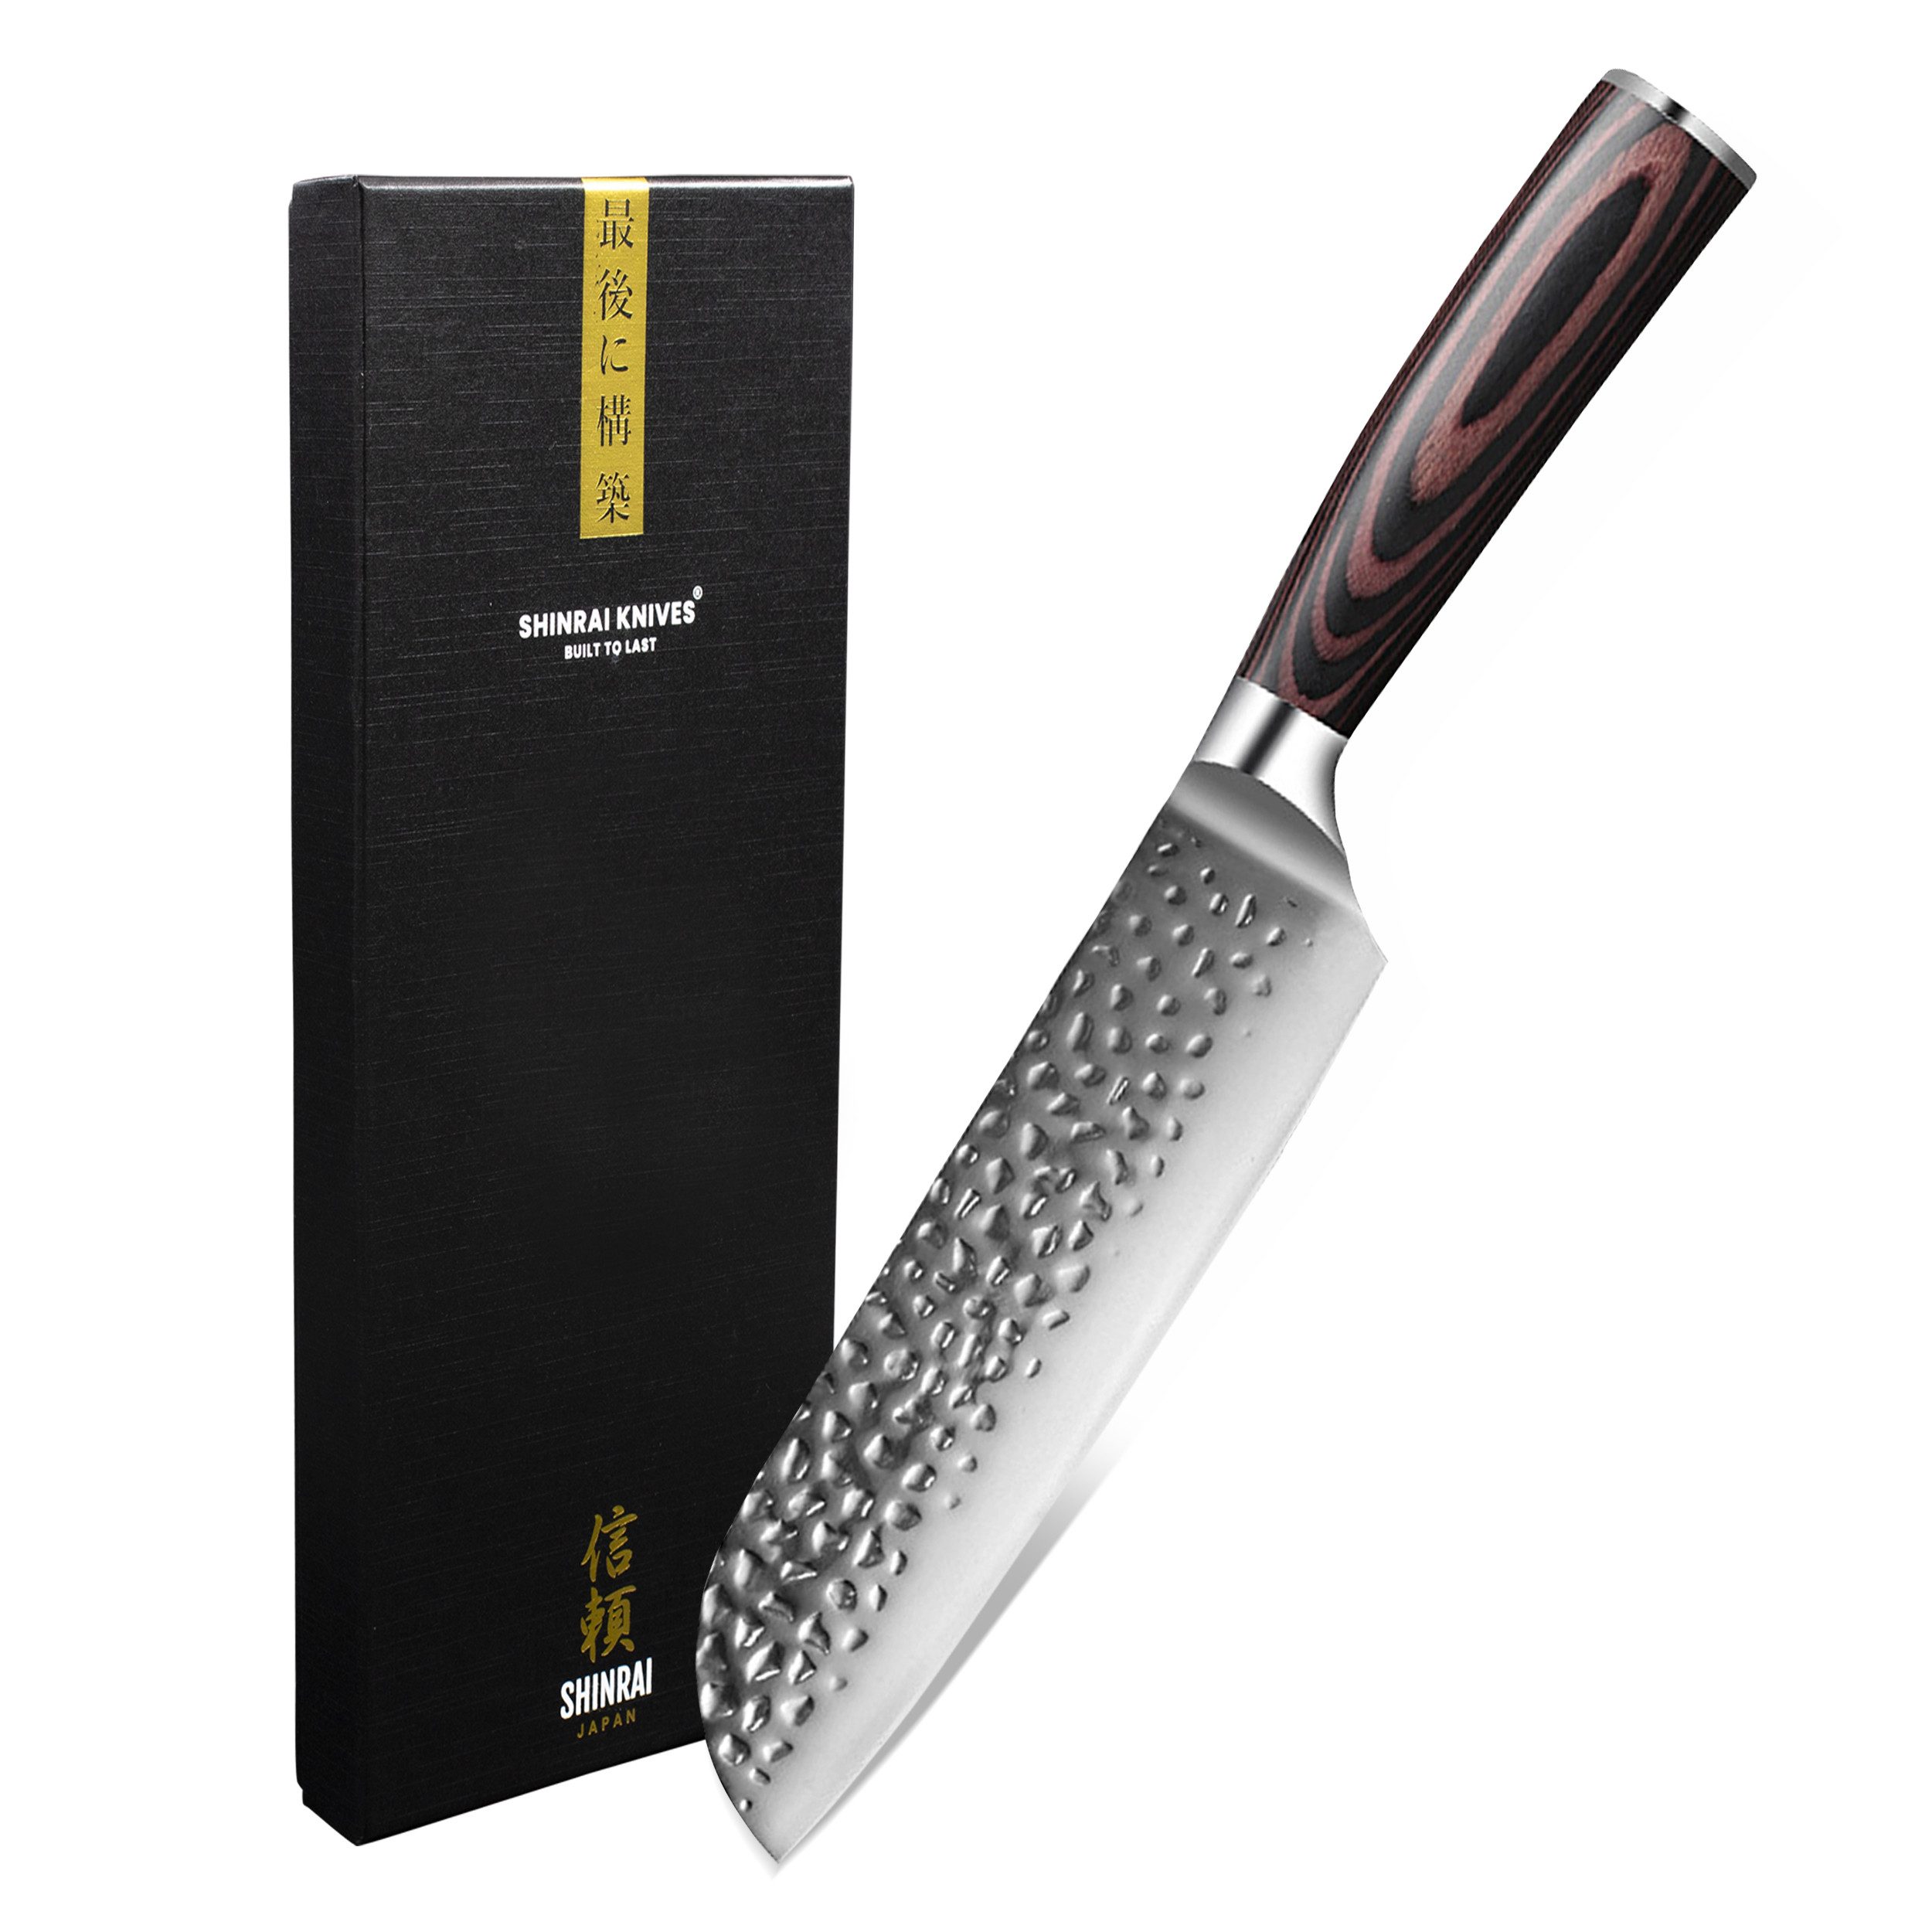 Shinrai Japan Damastmesser Santokumesser 18 cm - Japanisches Messer aus Edelstahl - Kochmesser, Handgefertigt bis ins Detail